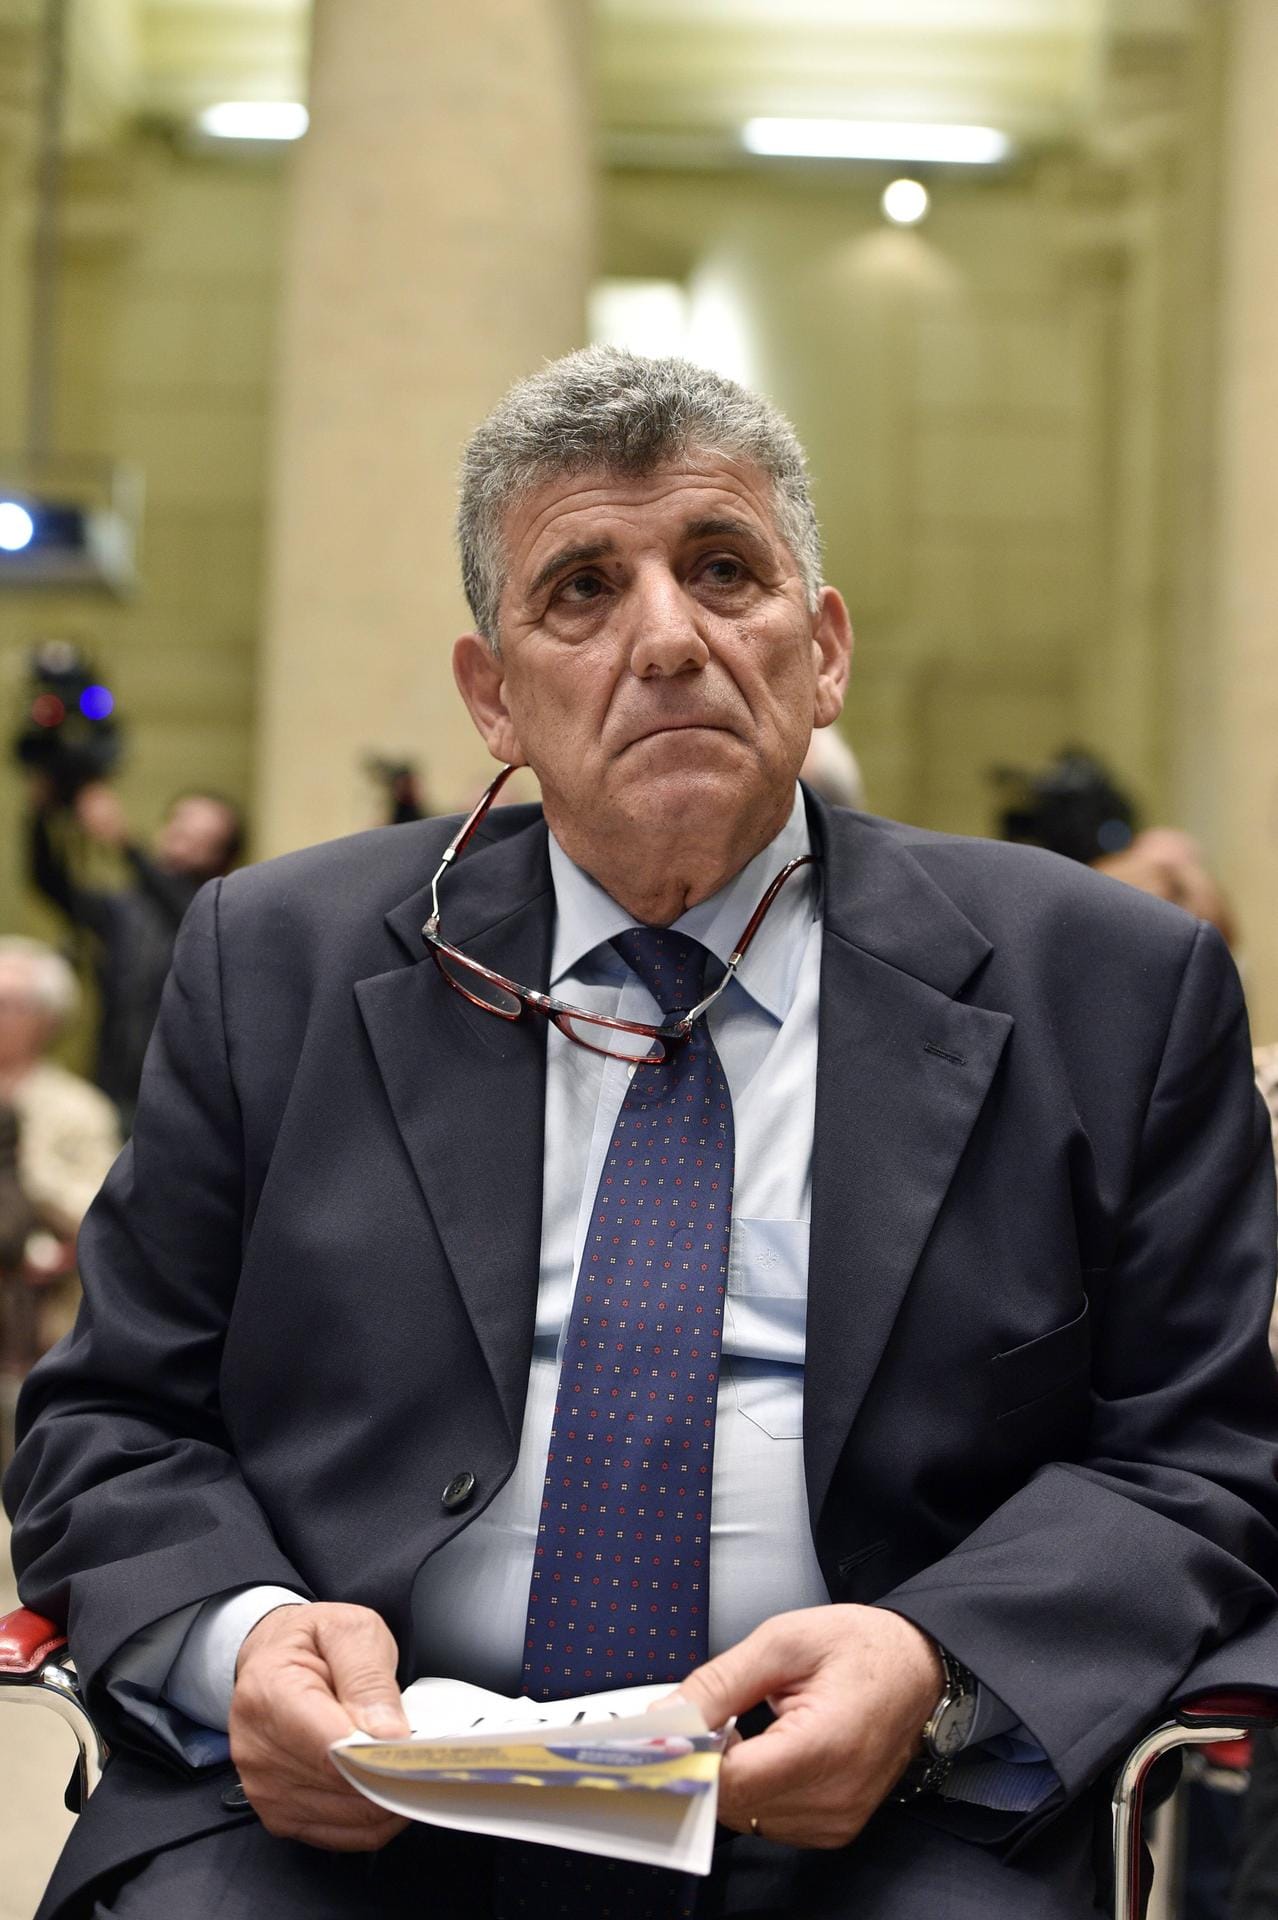 Pietro Bartolo ist seit dem Dokumentarfilm "Fuocoammare" einem breiteren Publikum bekannt. Der Arzt von der süditalienischen Insel Lampedusa setzt sich seit Jahren für die Rettung von Flüchtlingen ein. Nun zieht der 63-Jährige für die Mitte-Links-Partei Partito Democratico ins Europaparlament ein. (Archivbild)